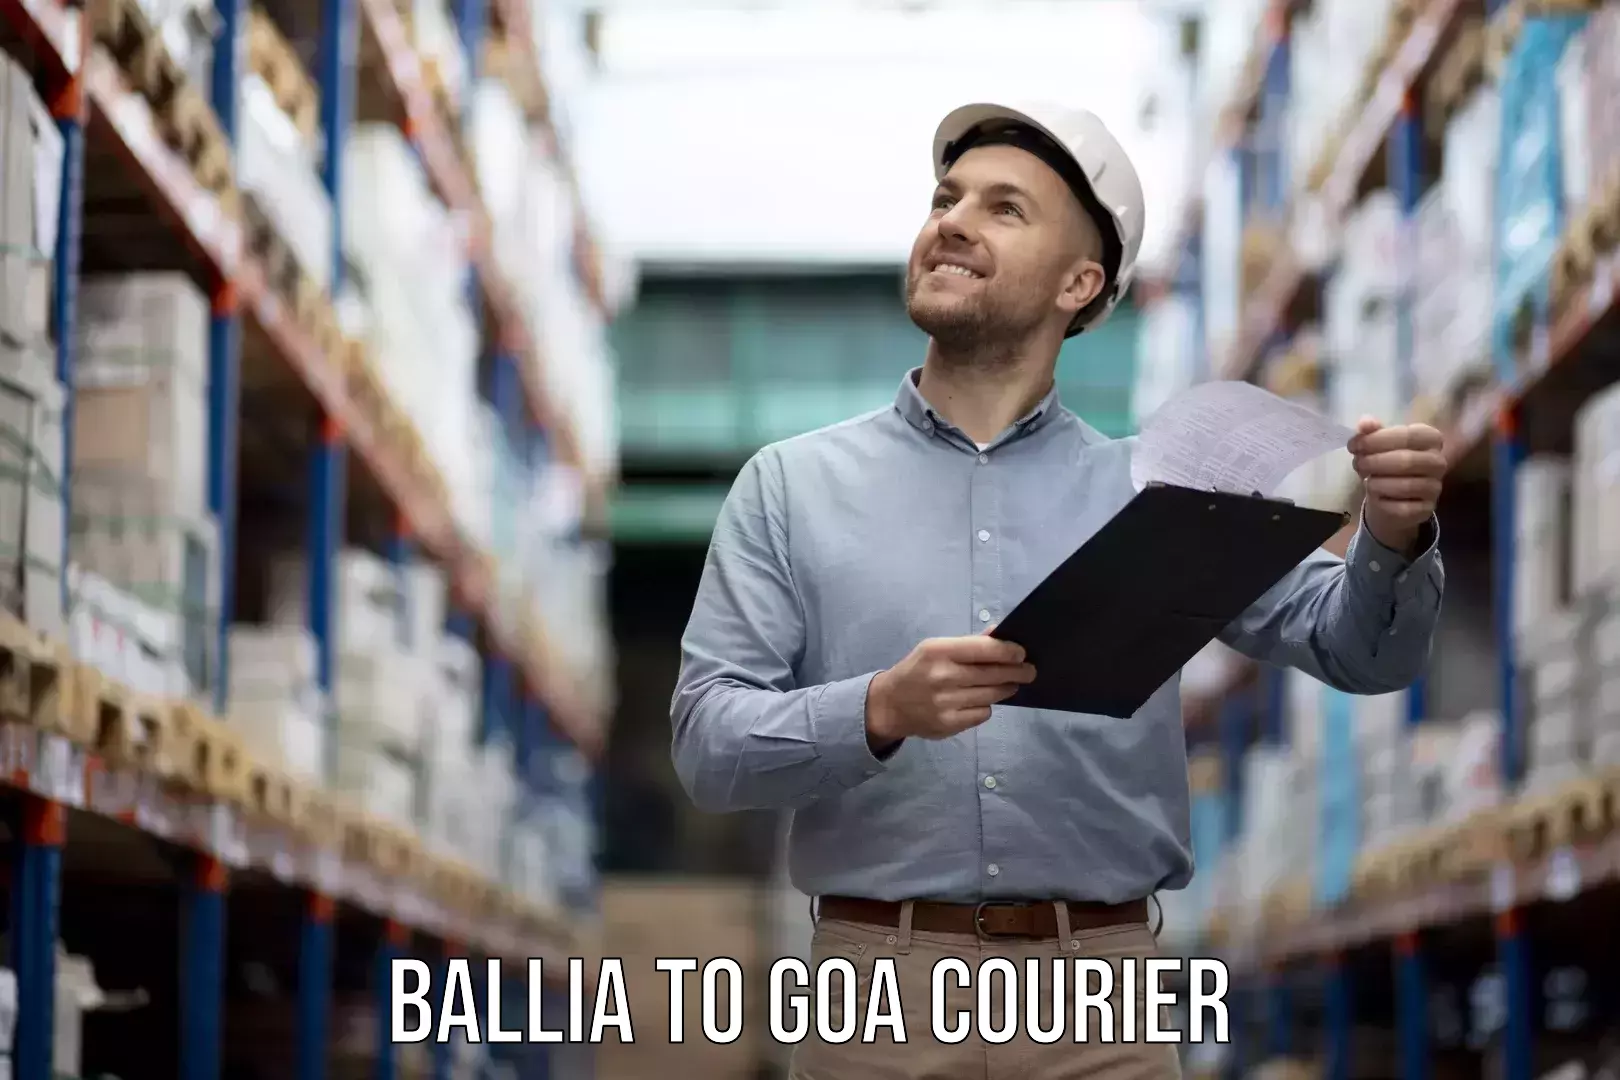 Furniture transport services Ballia to IIT Goa